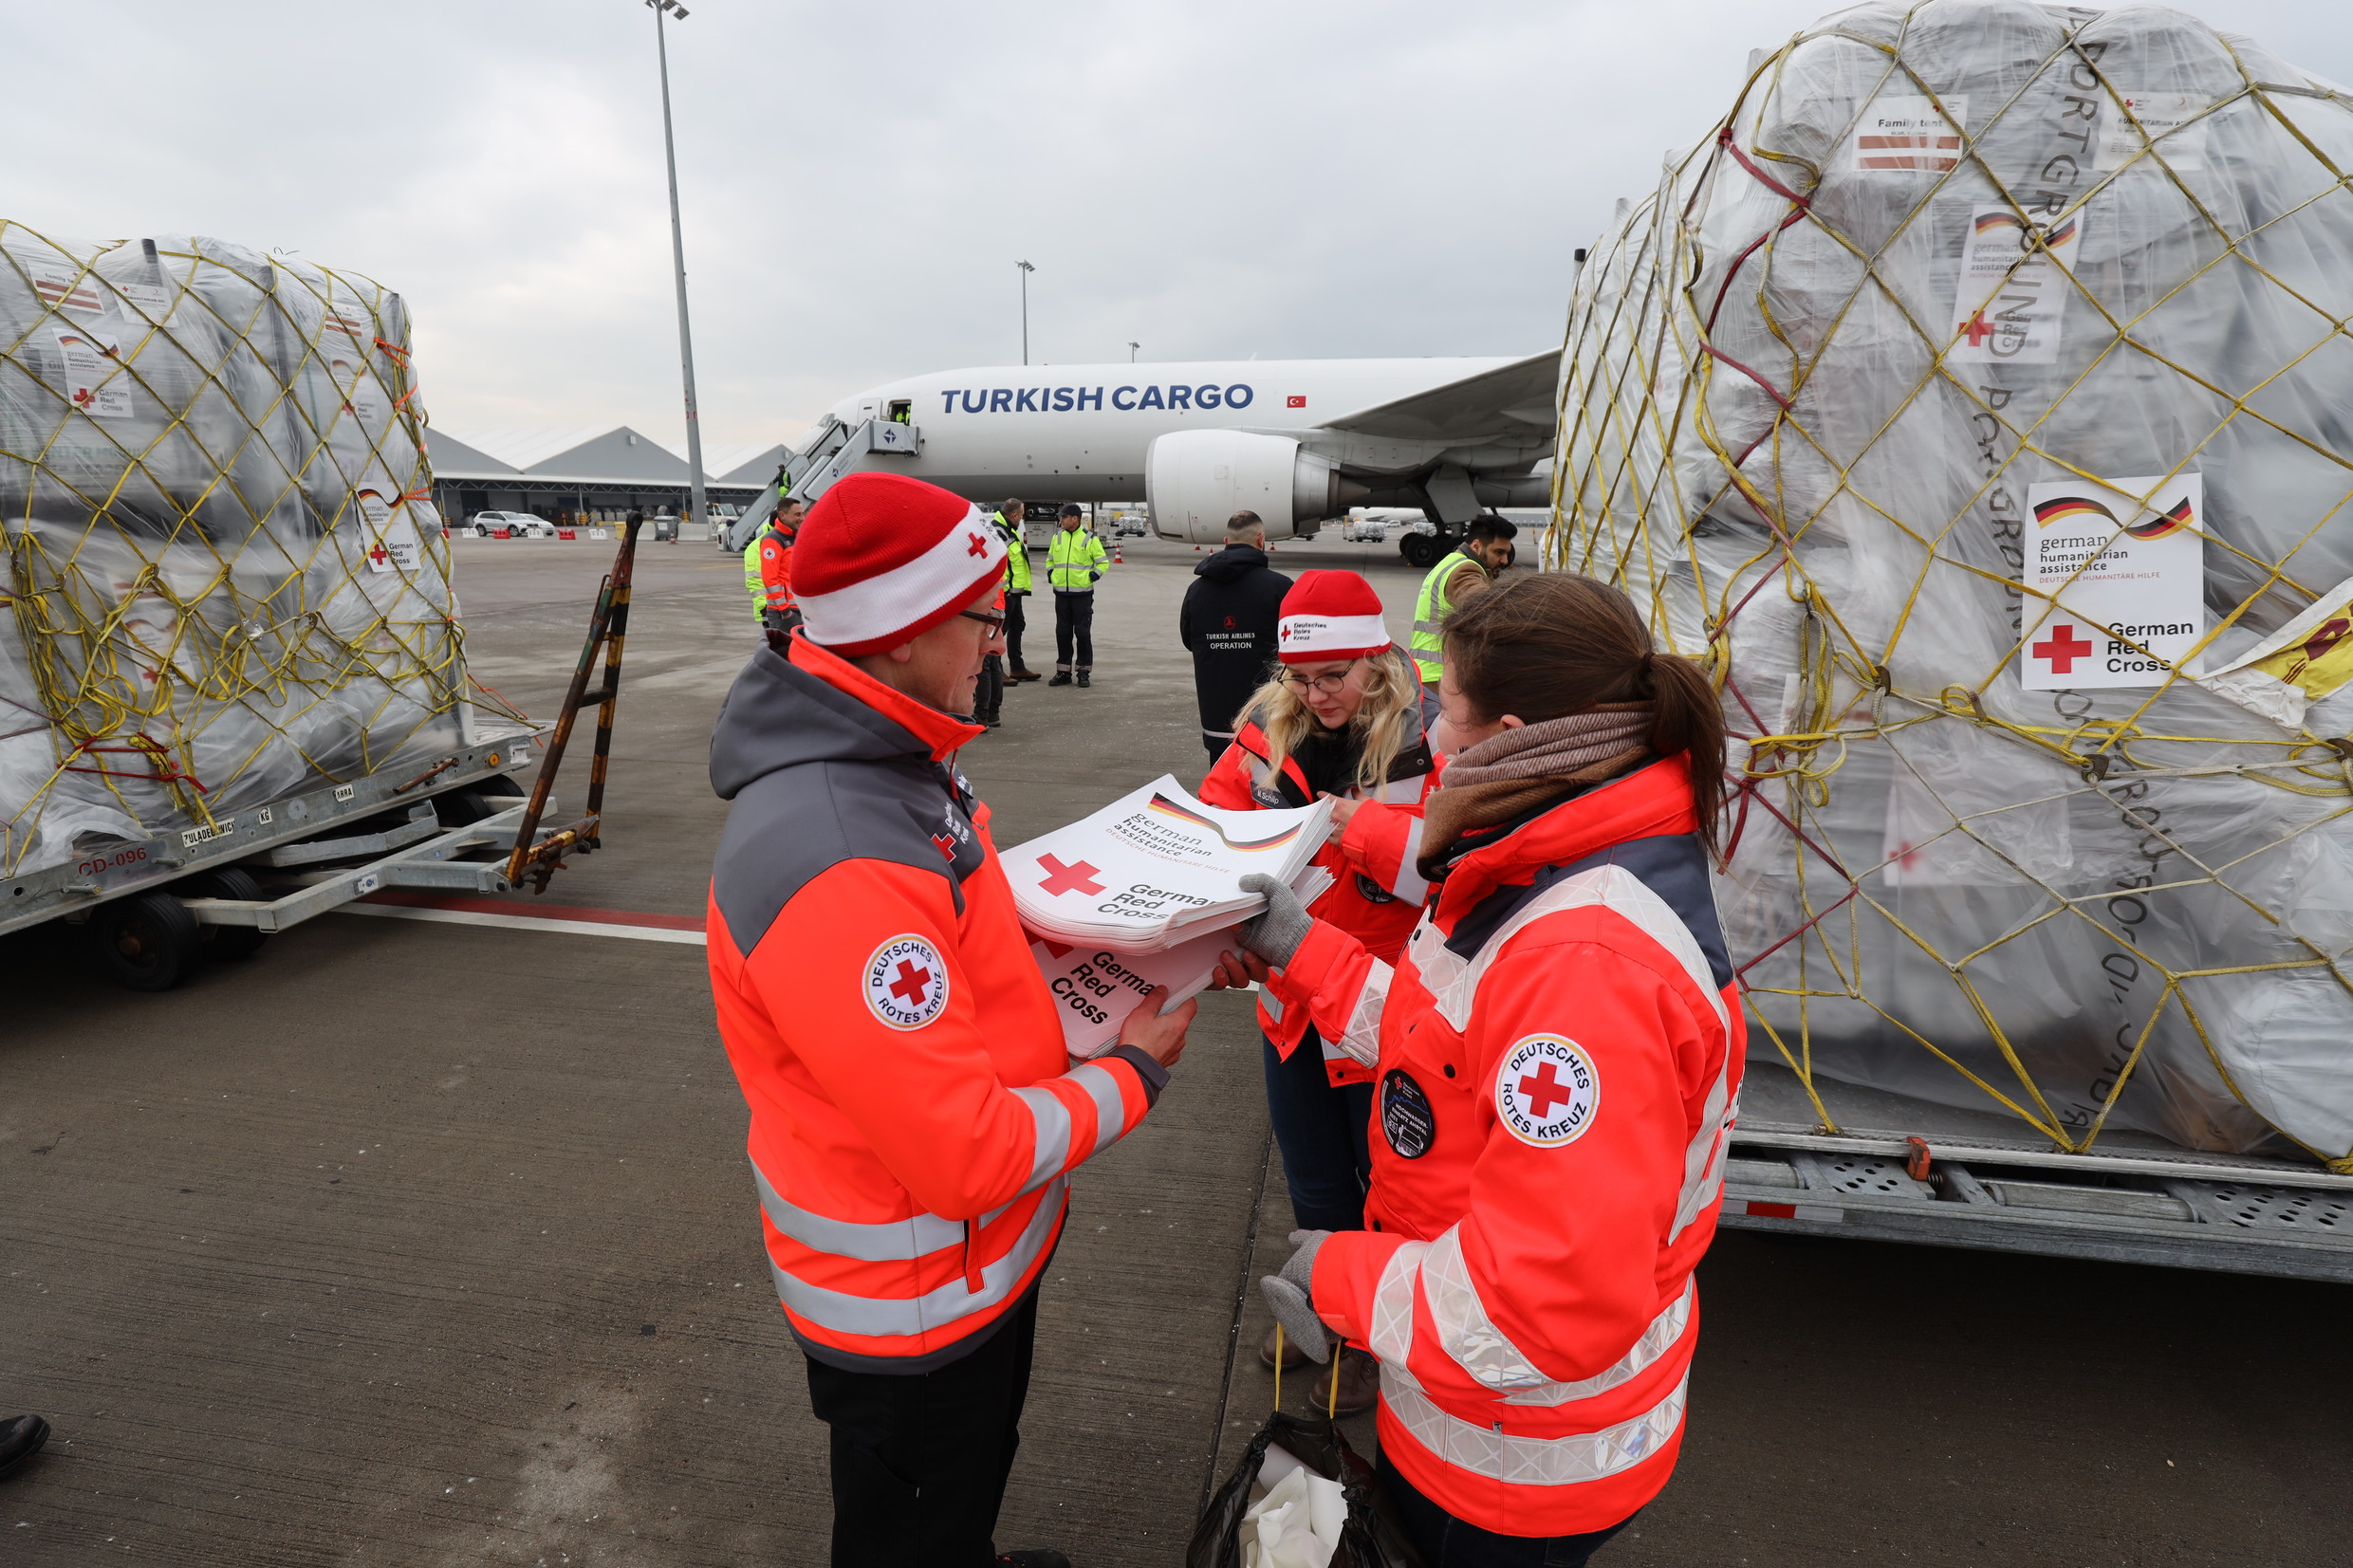 Hilfsflug des DRK in die Türkei nach dem Erdbeben (Credit: DRK-LV Sachsen)